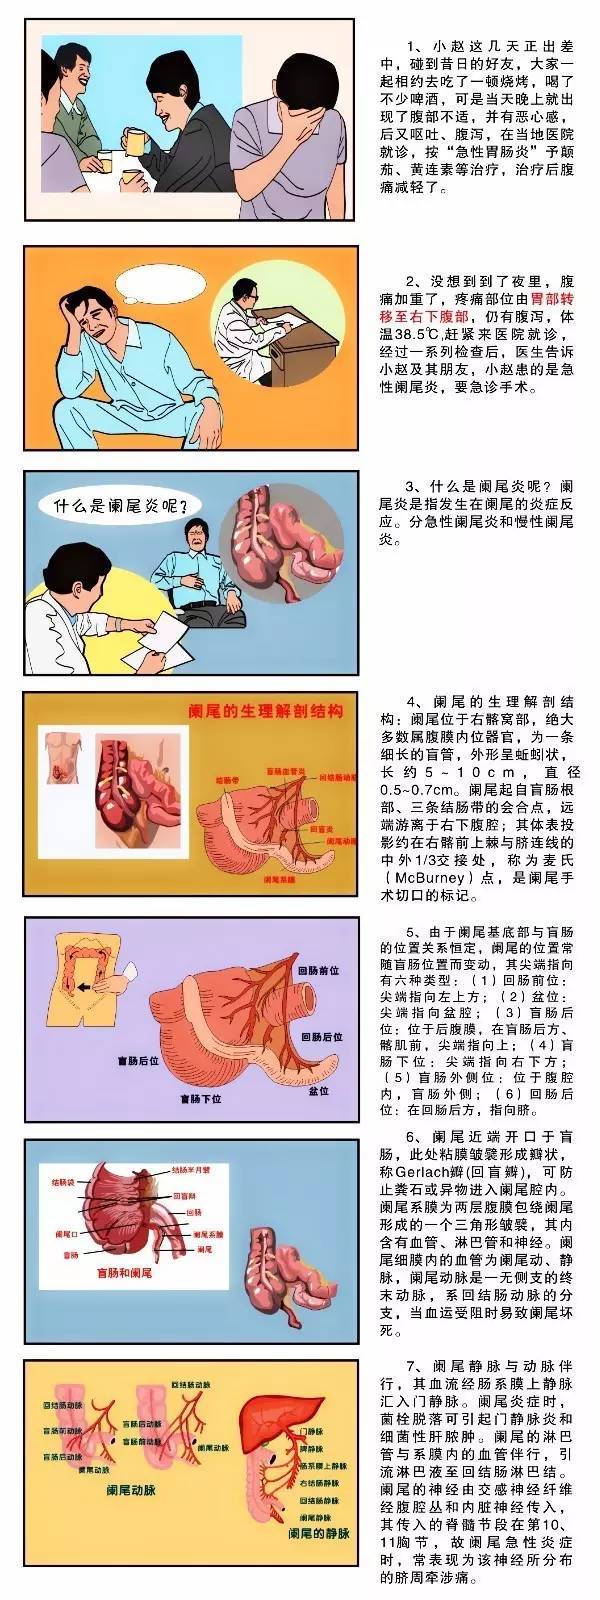 图解疾病:阑尾炎-健康频道-手机搜狐